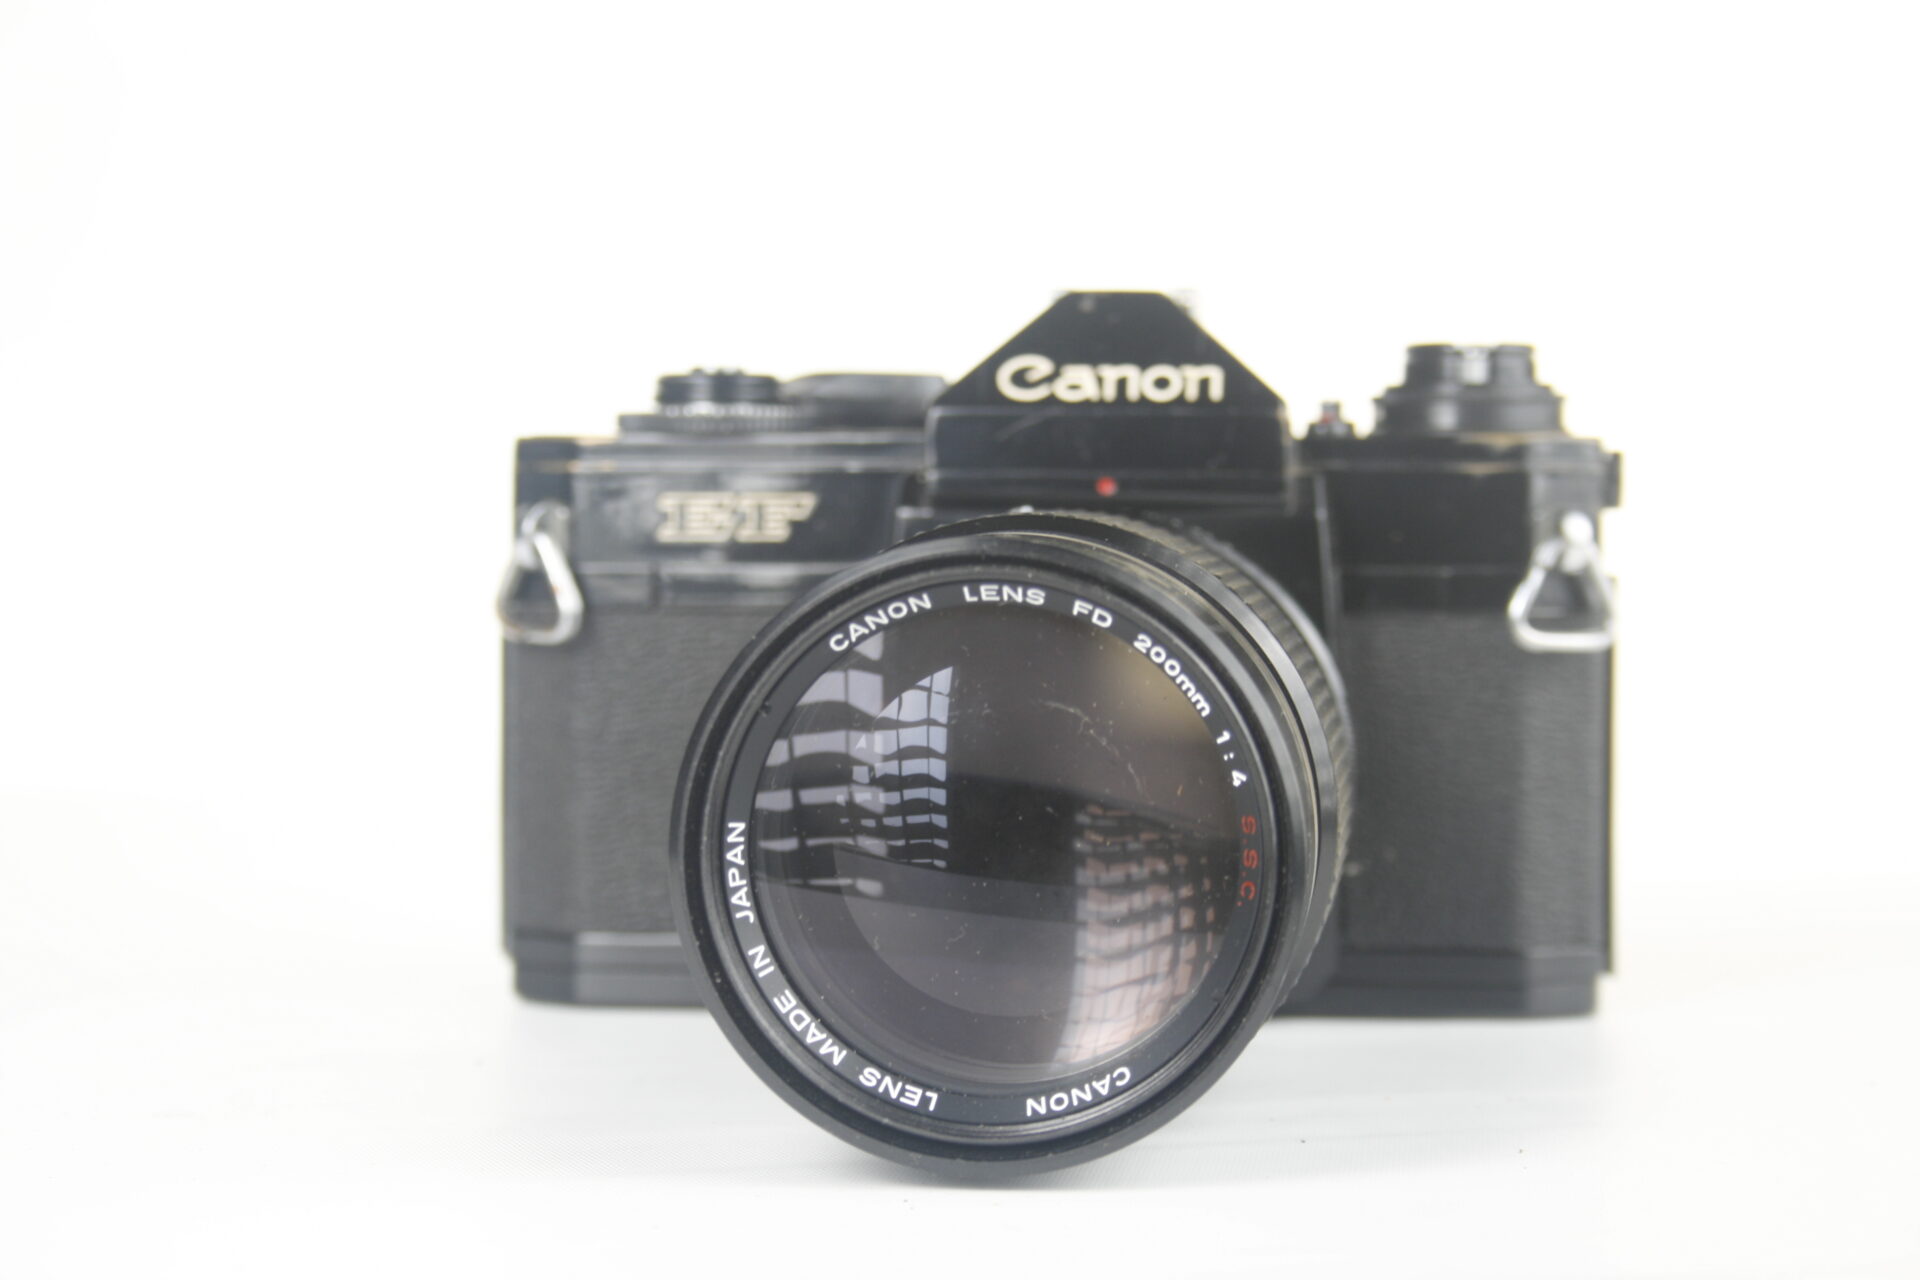 Canon EF 35mm SLR viewfinder camera. 1973. Japan.